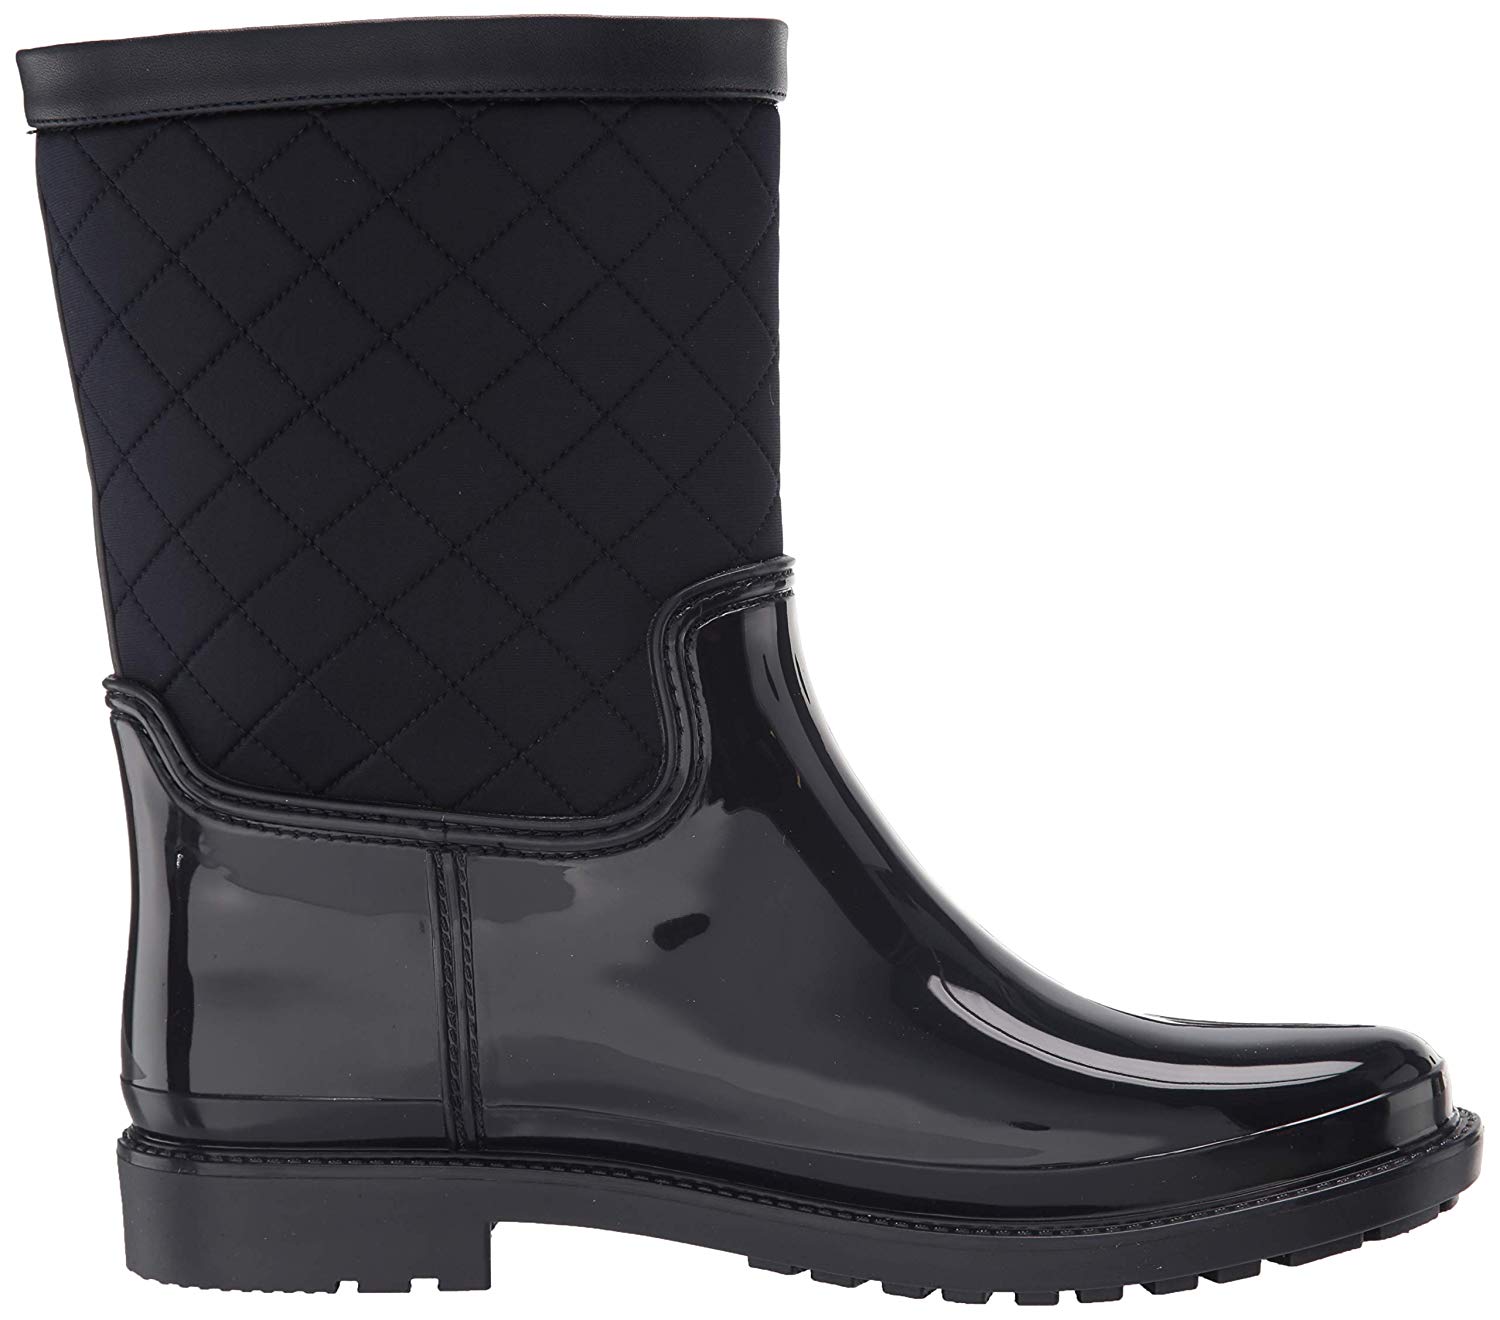 Tommy Hilfiger Women's Splash Rain Boot, Navy, Size 9.0 9I9L | eBay